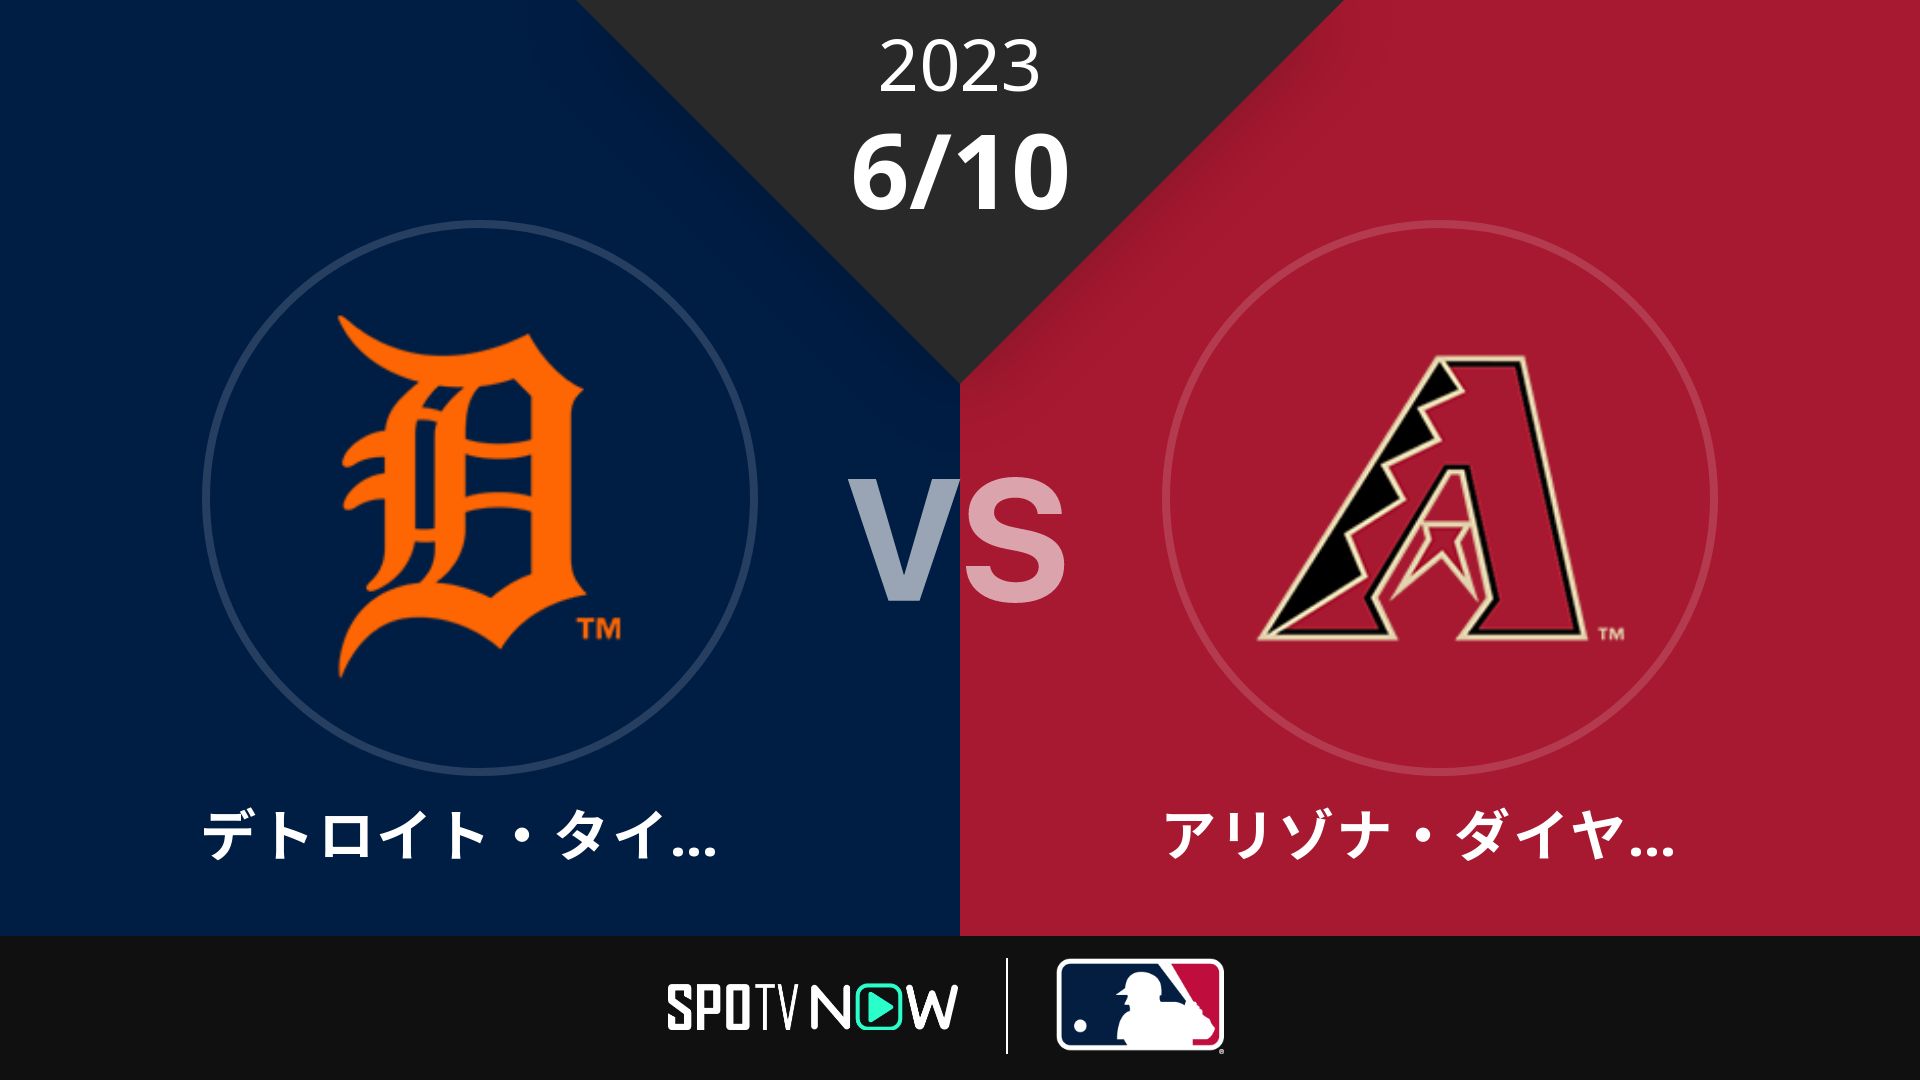 2023/6/10 タイガース vs Dバックス [MLB]